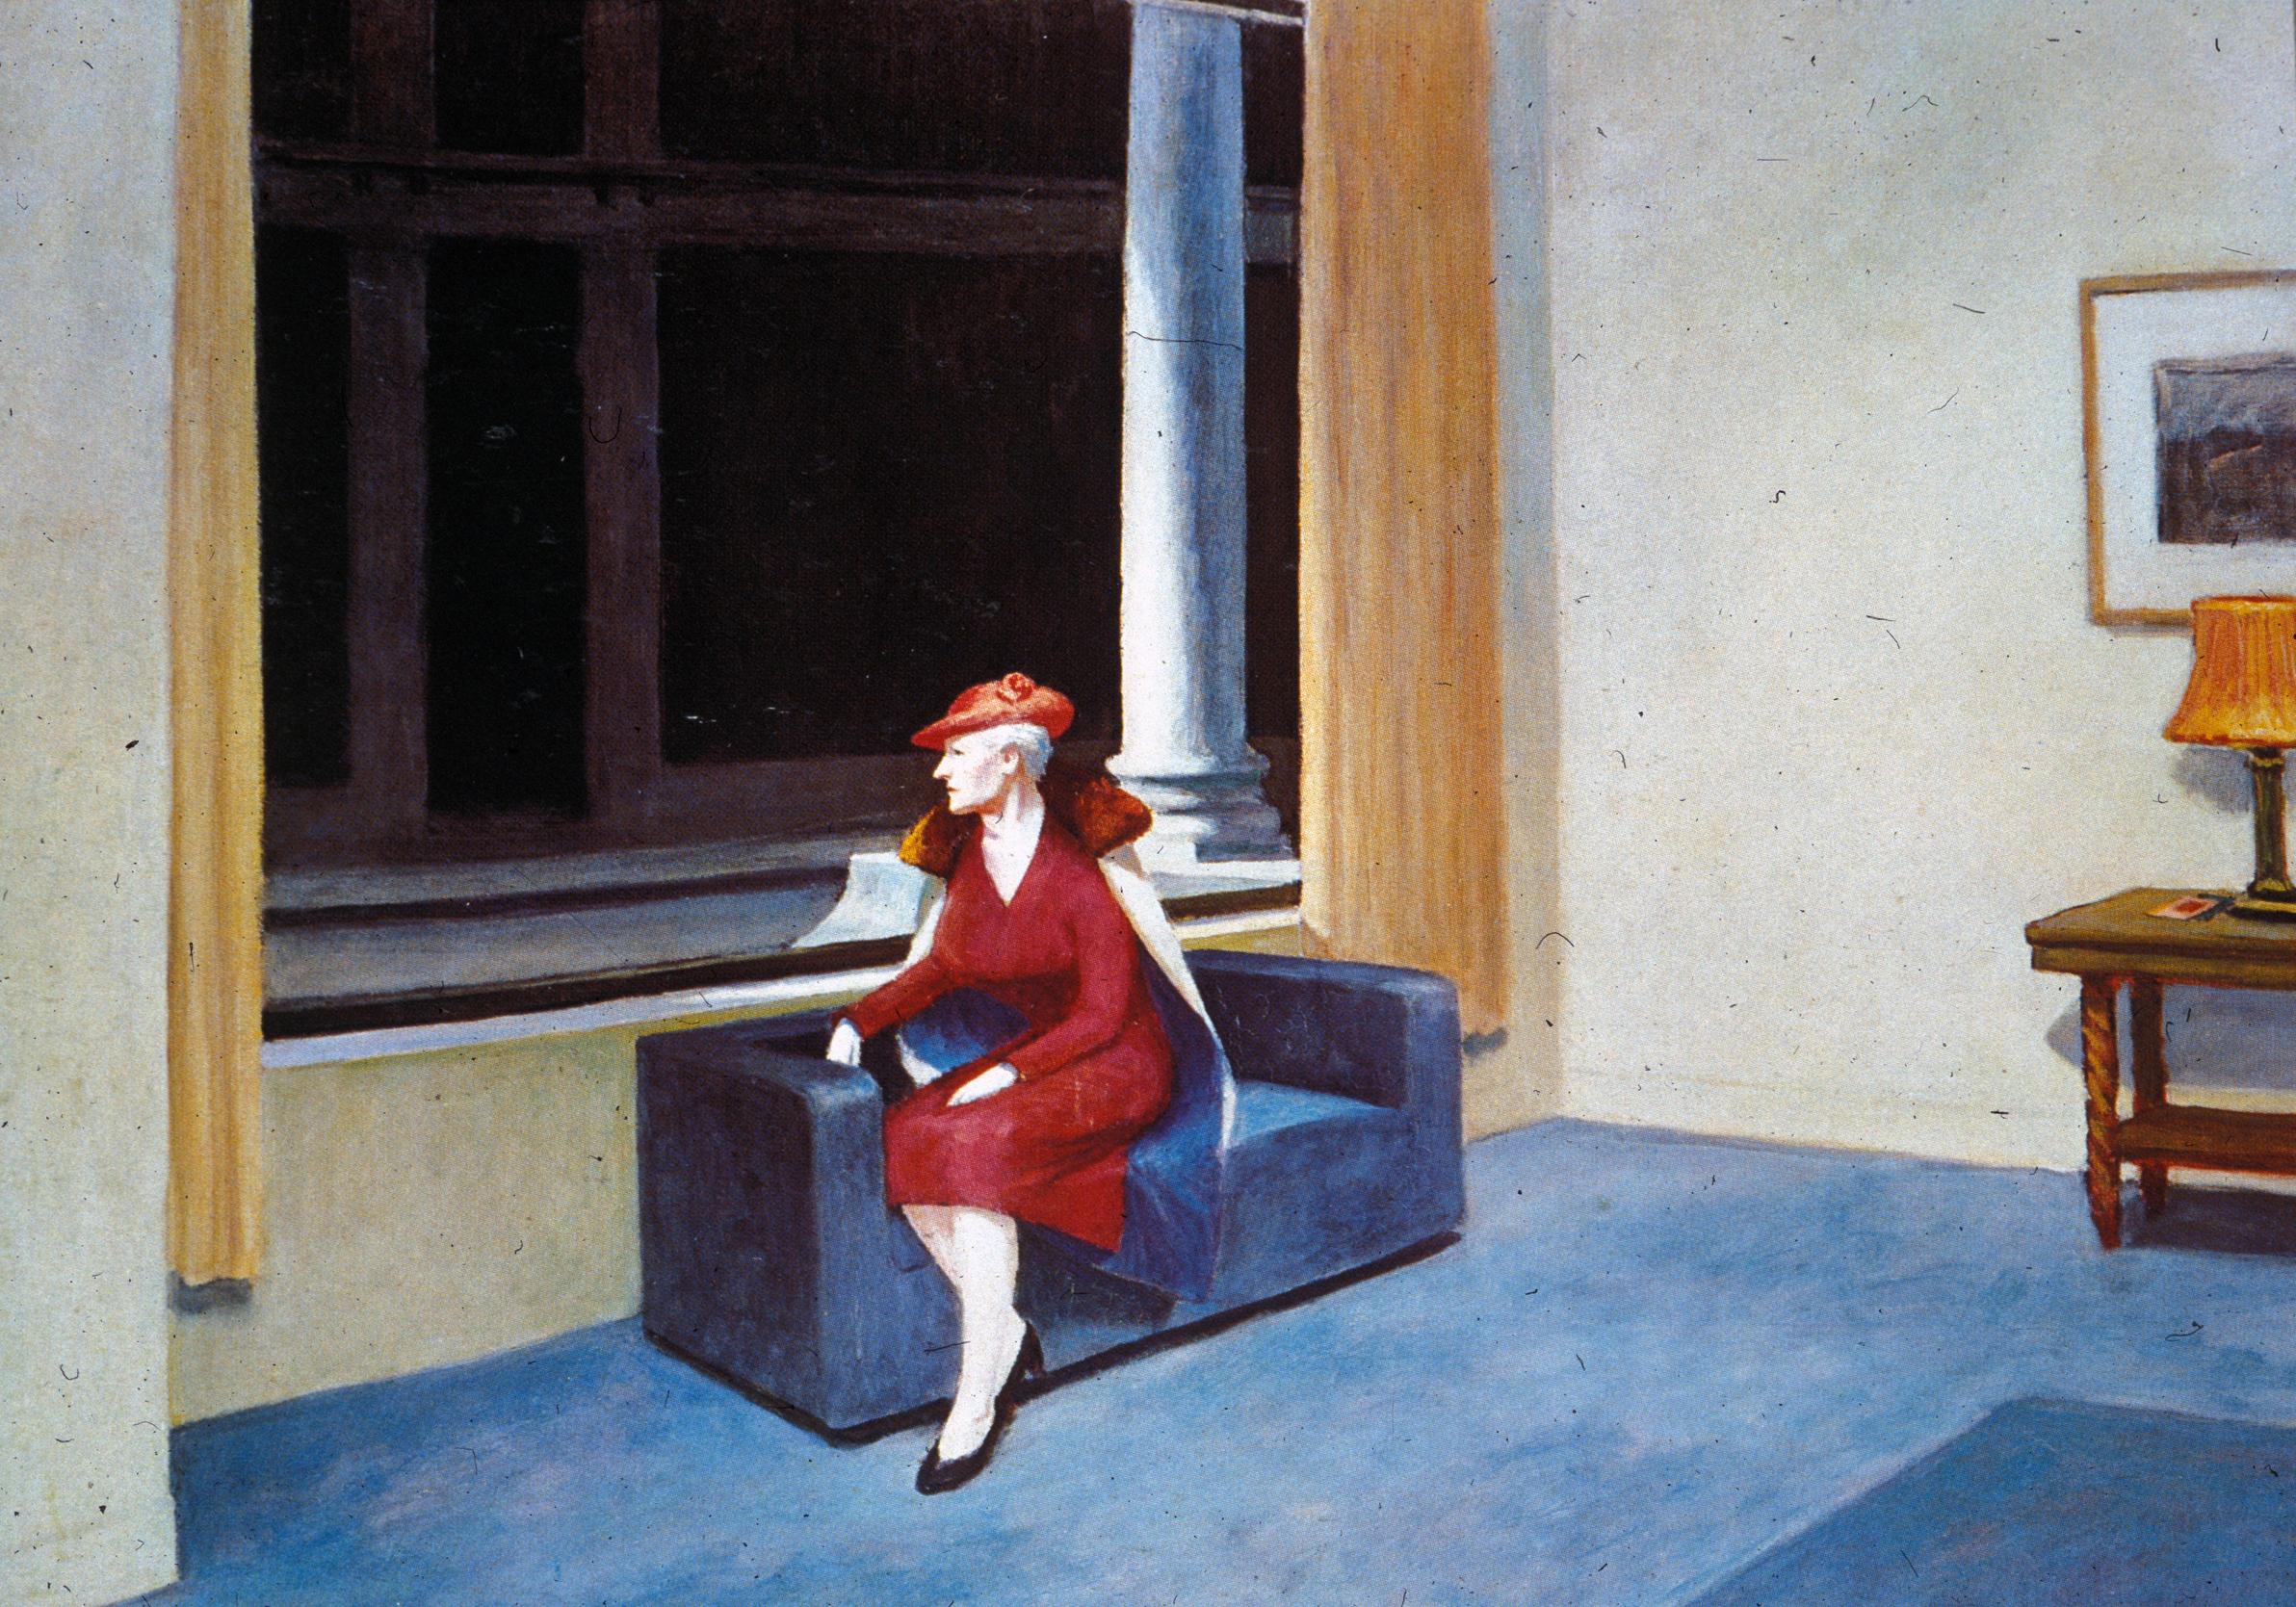 A Janela de Hotel by Edward Hopper - 1955 - 101.6 x 139.7 cm coleção privada